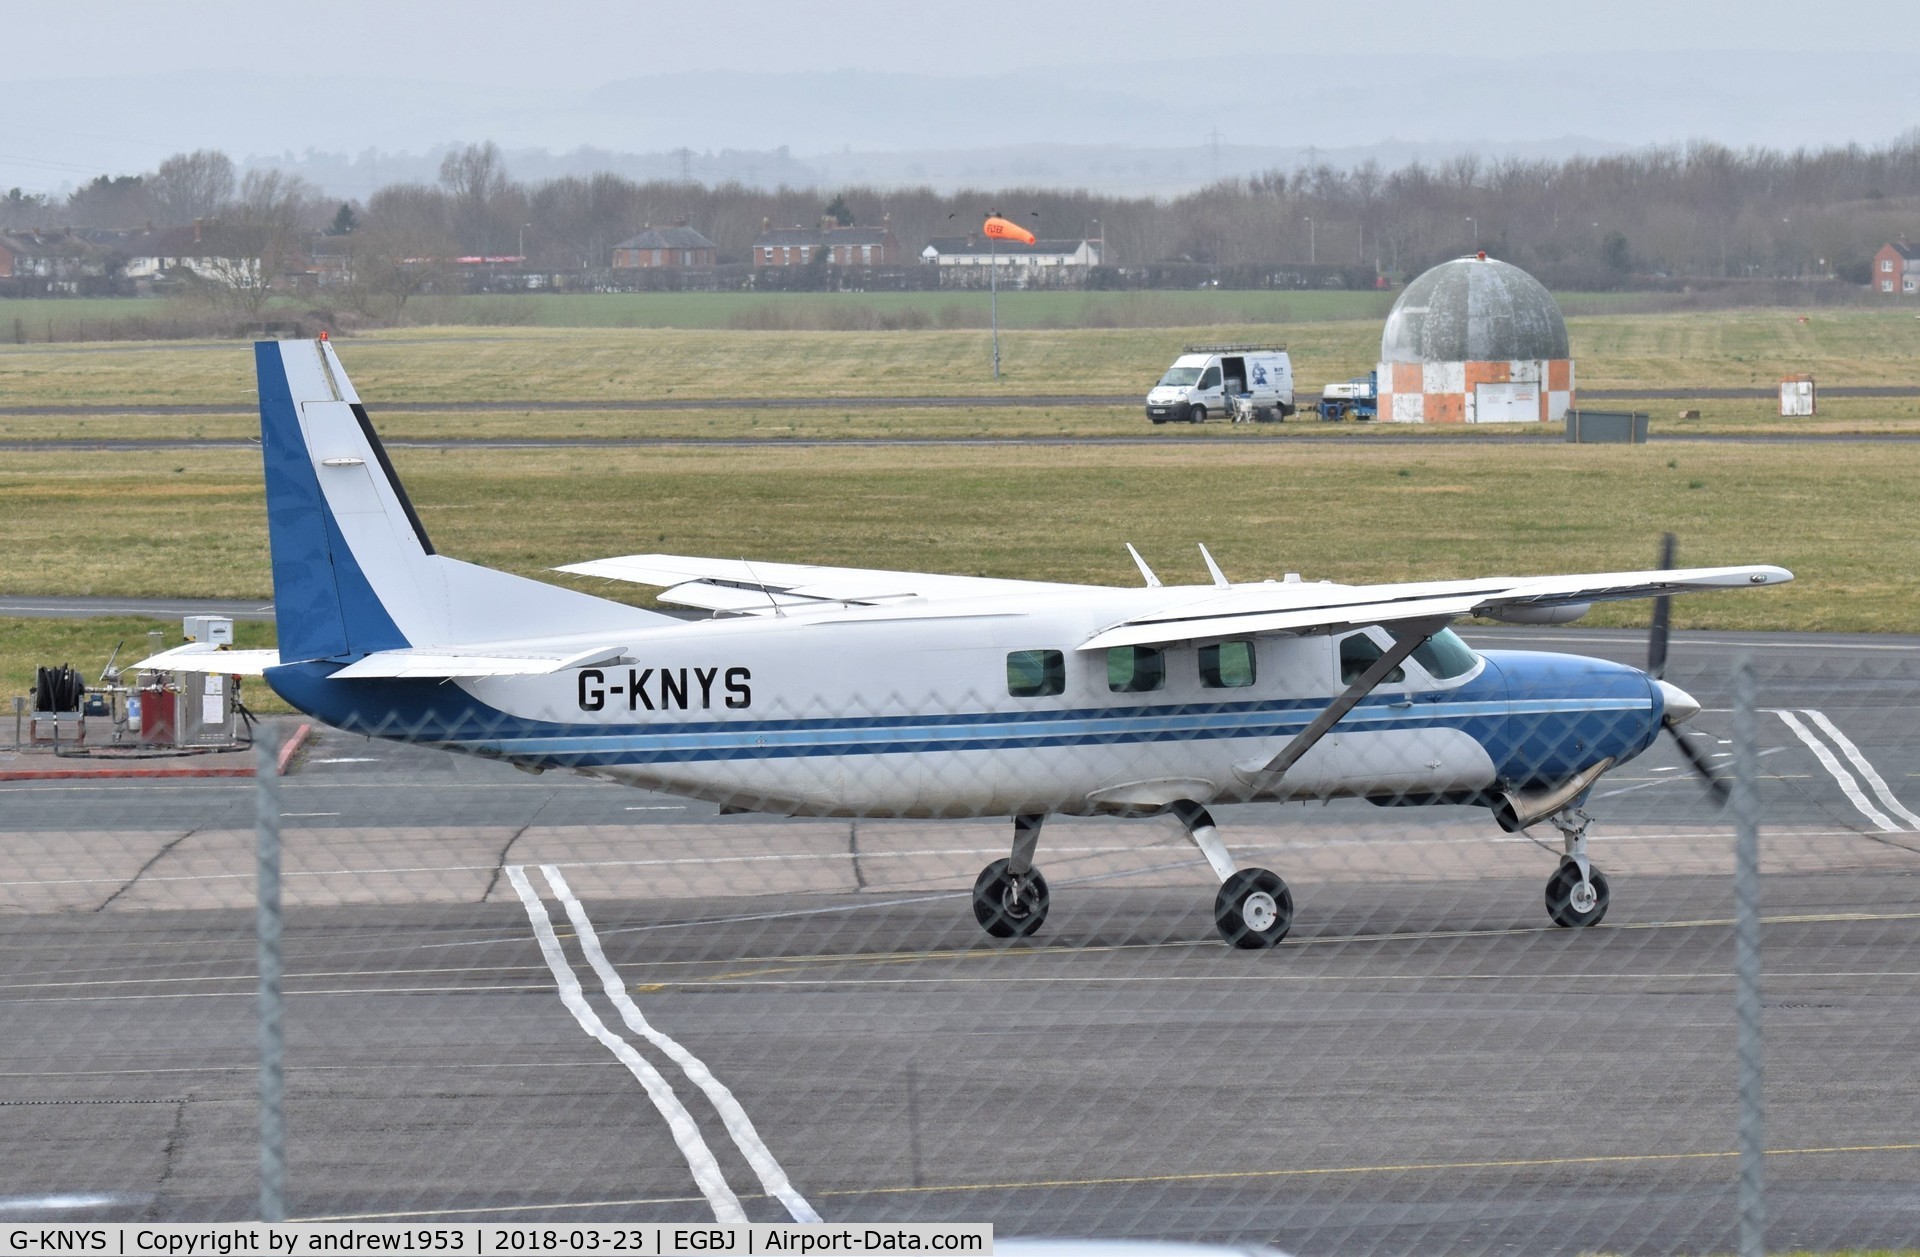 G-KNYS, 2005 Cessna 208B Grand Caravan C/N 208B1146, G-KNYS at Gloucestershire Airport.